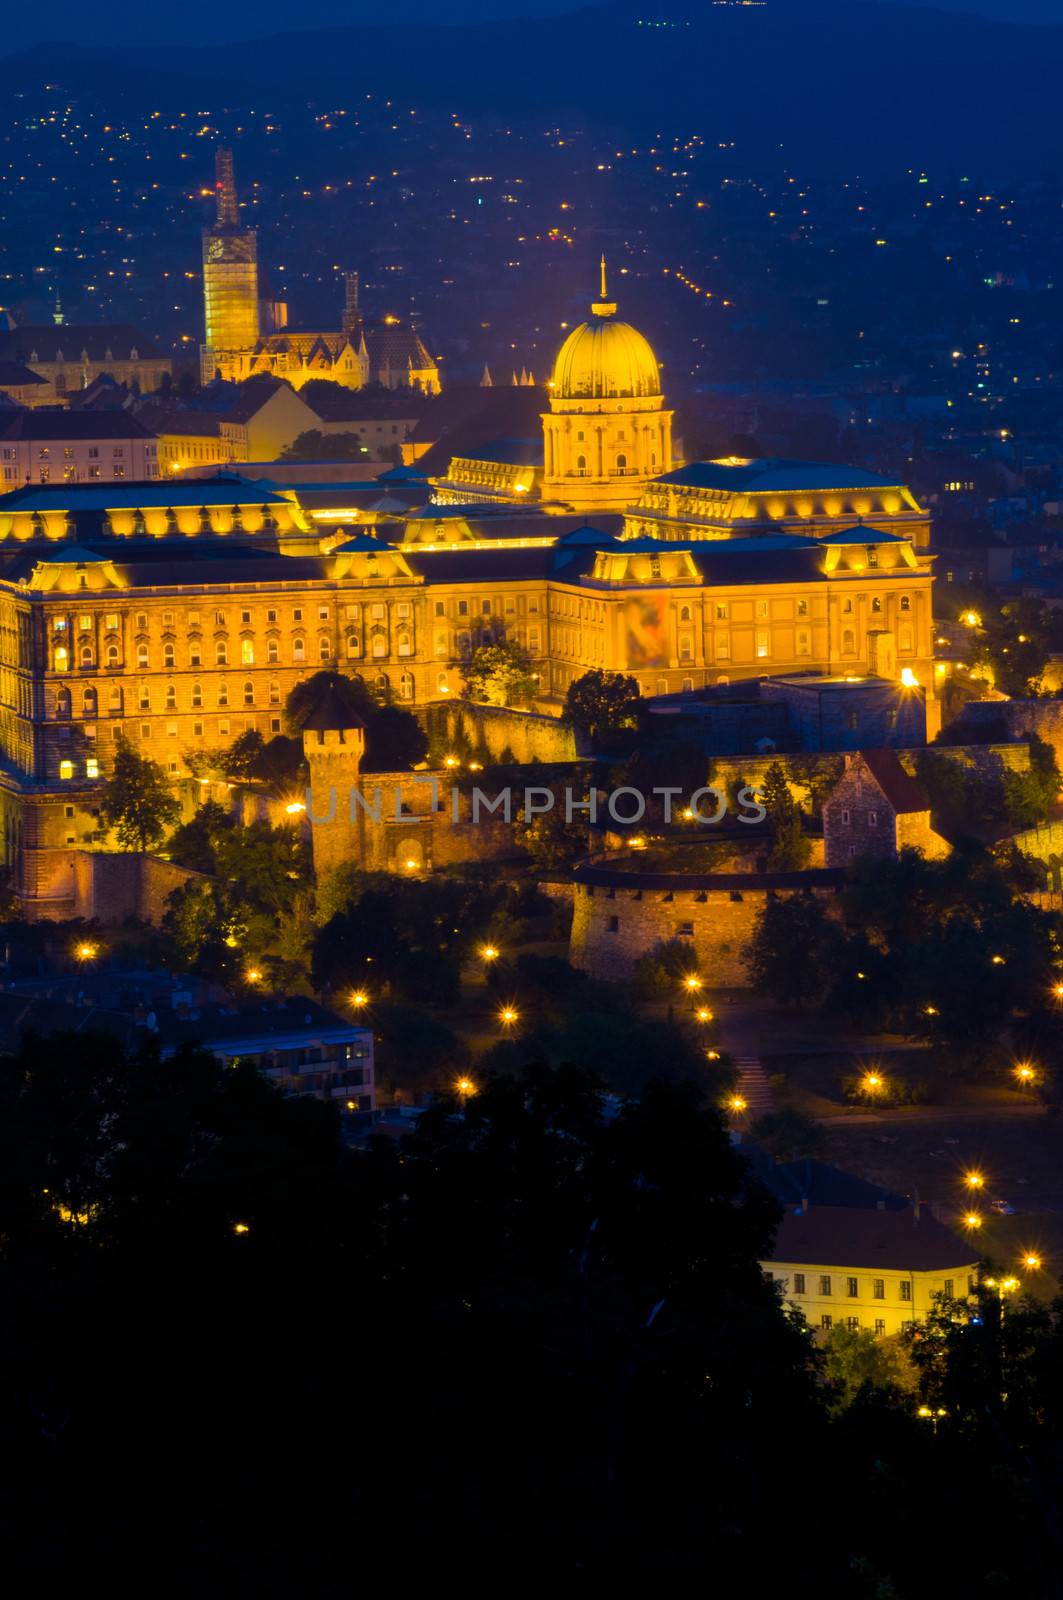 Castle of Budapest by Jule_Berlin